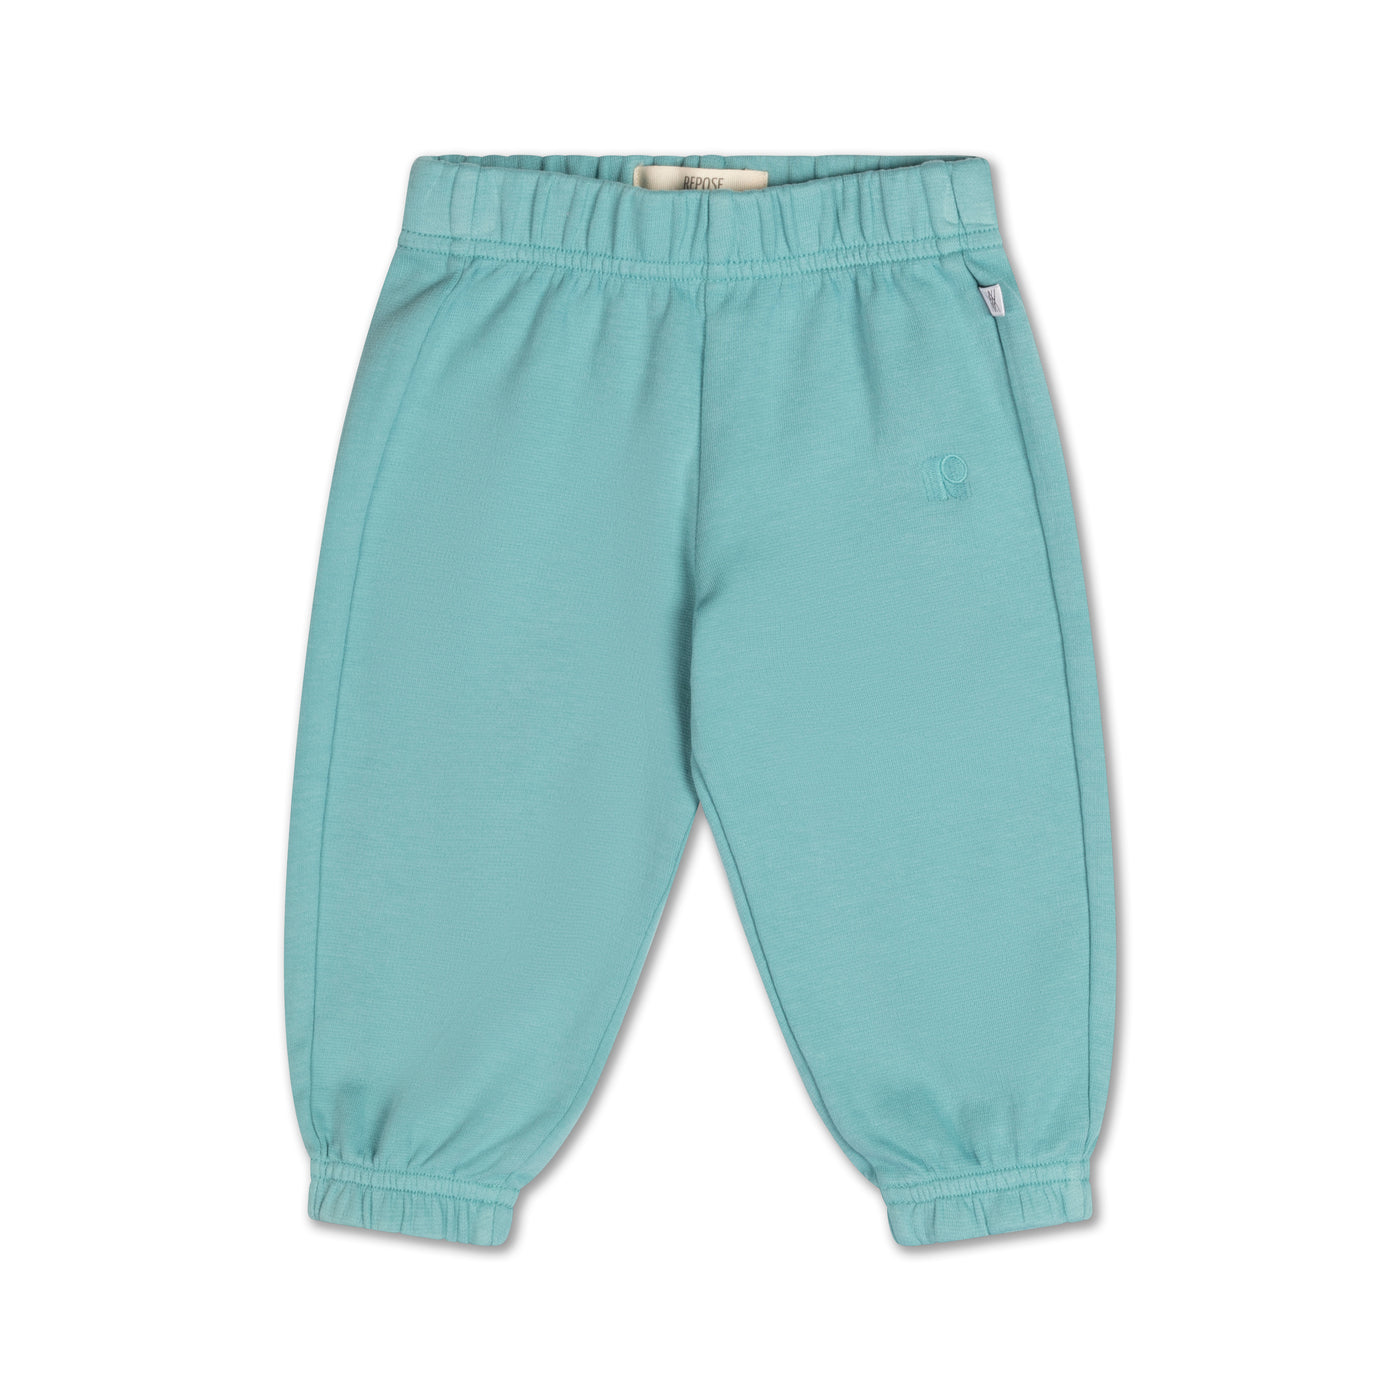 sweatpants - greyish turquoise